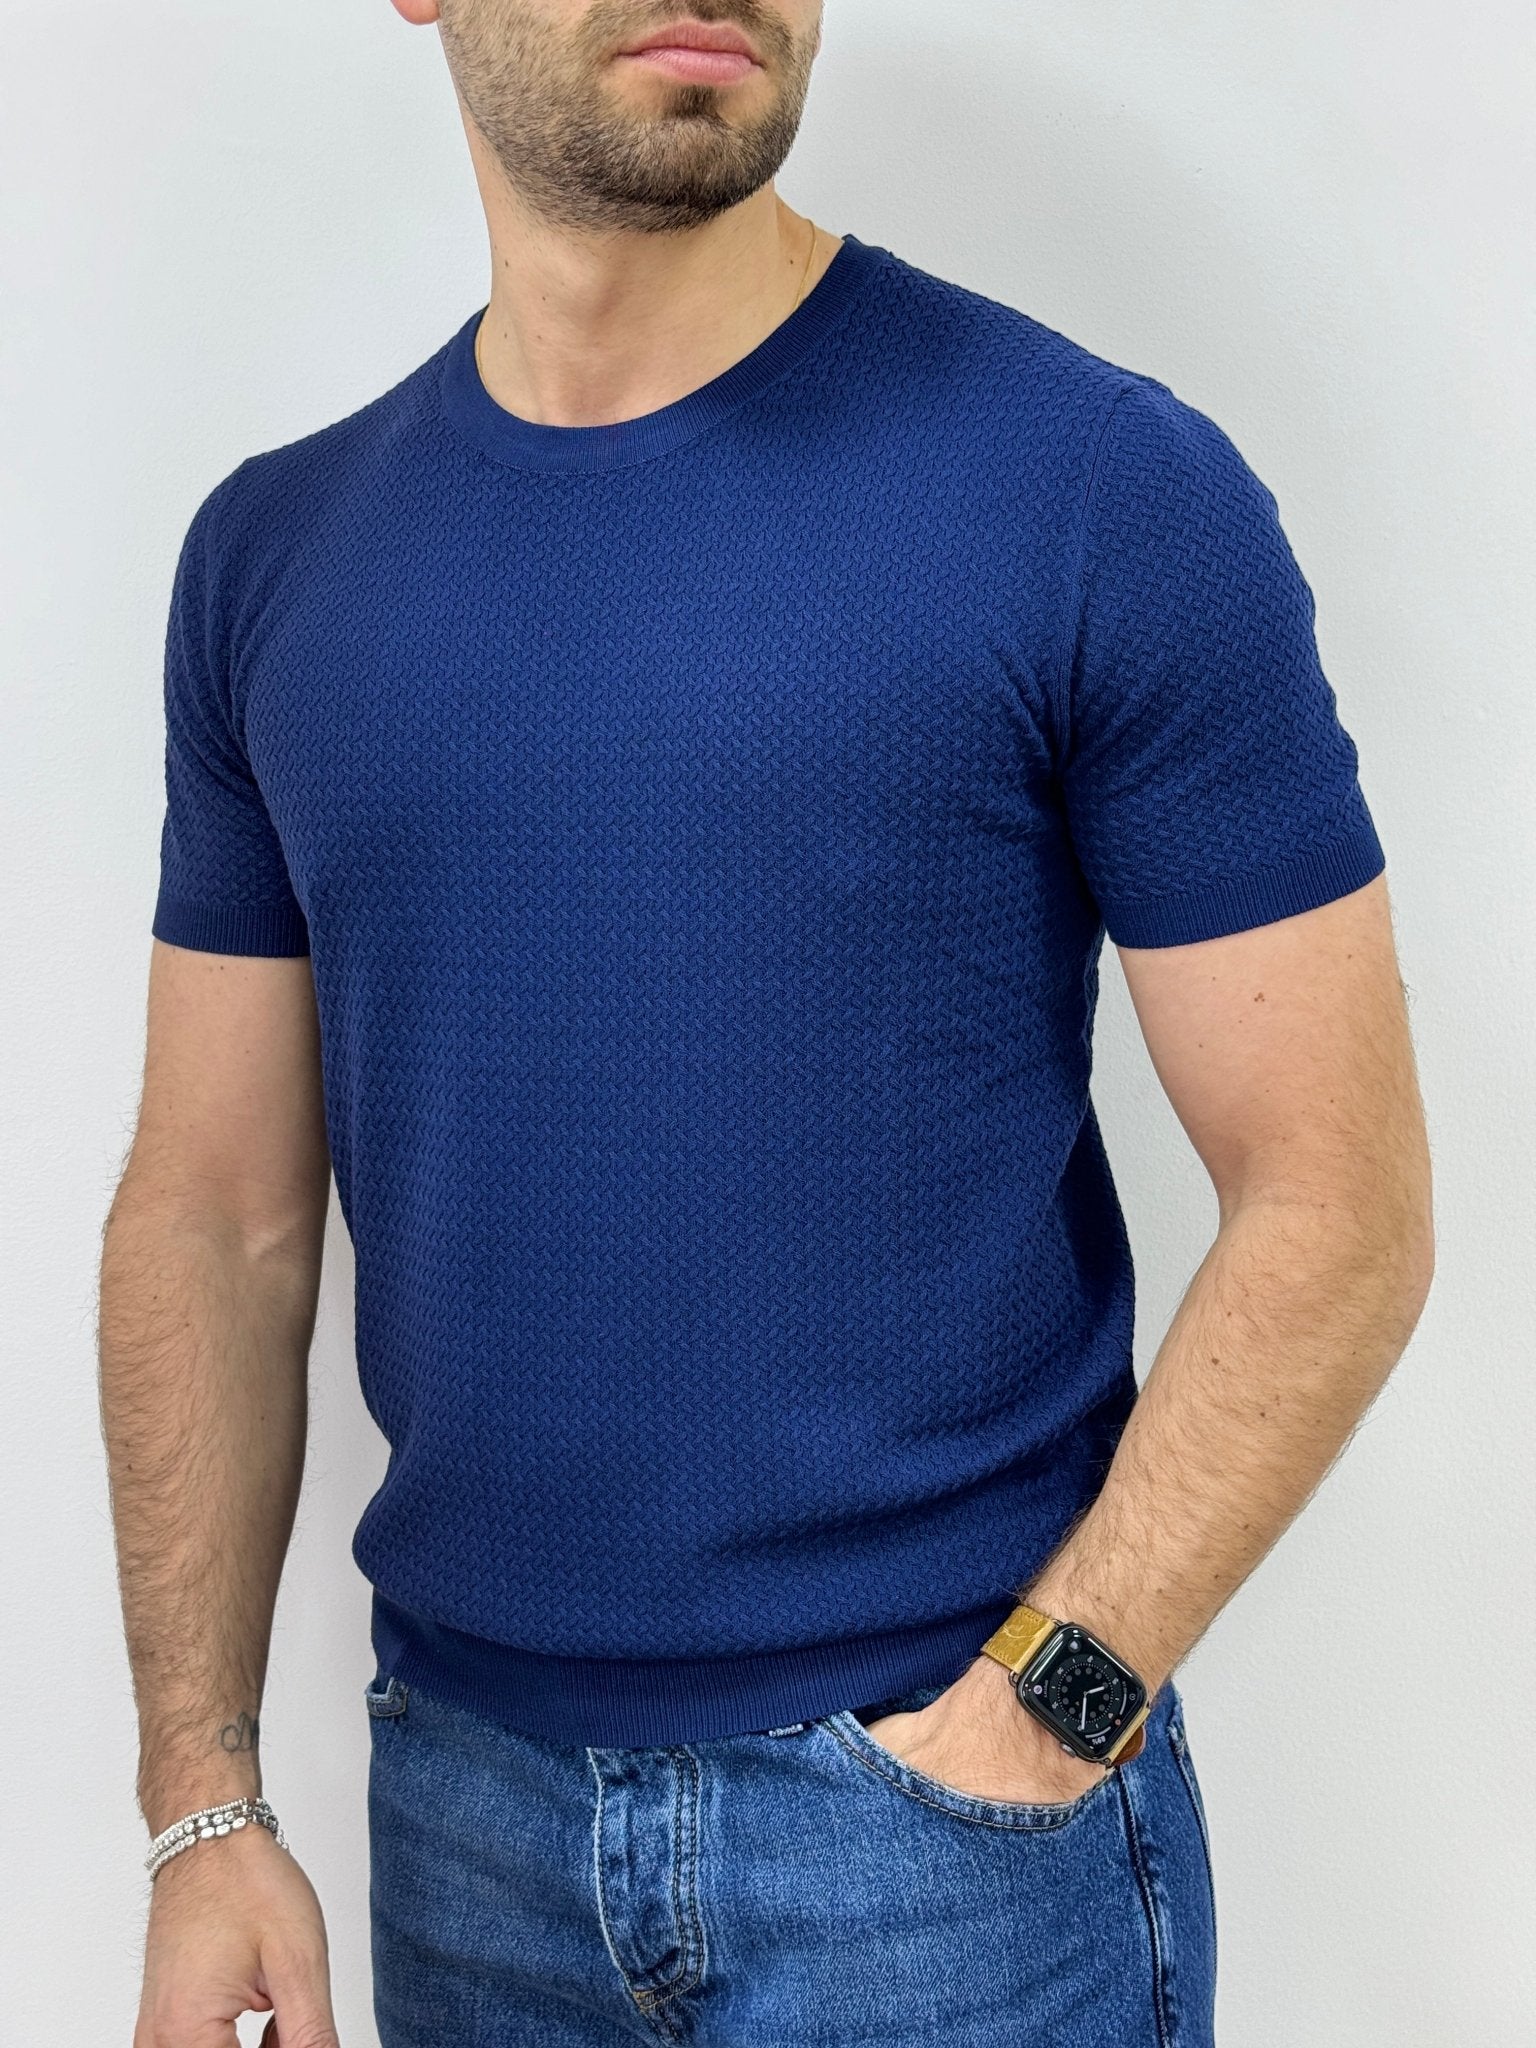 T-Shirt Uomo in Filo Intreccio Blu - SEASON LAB